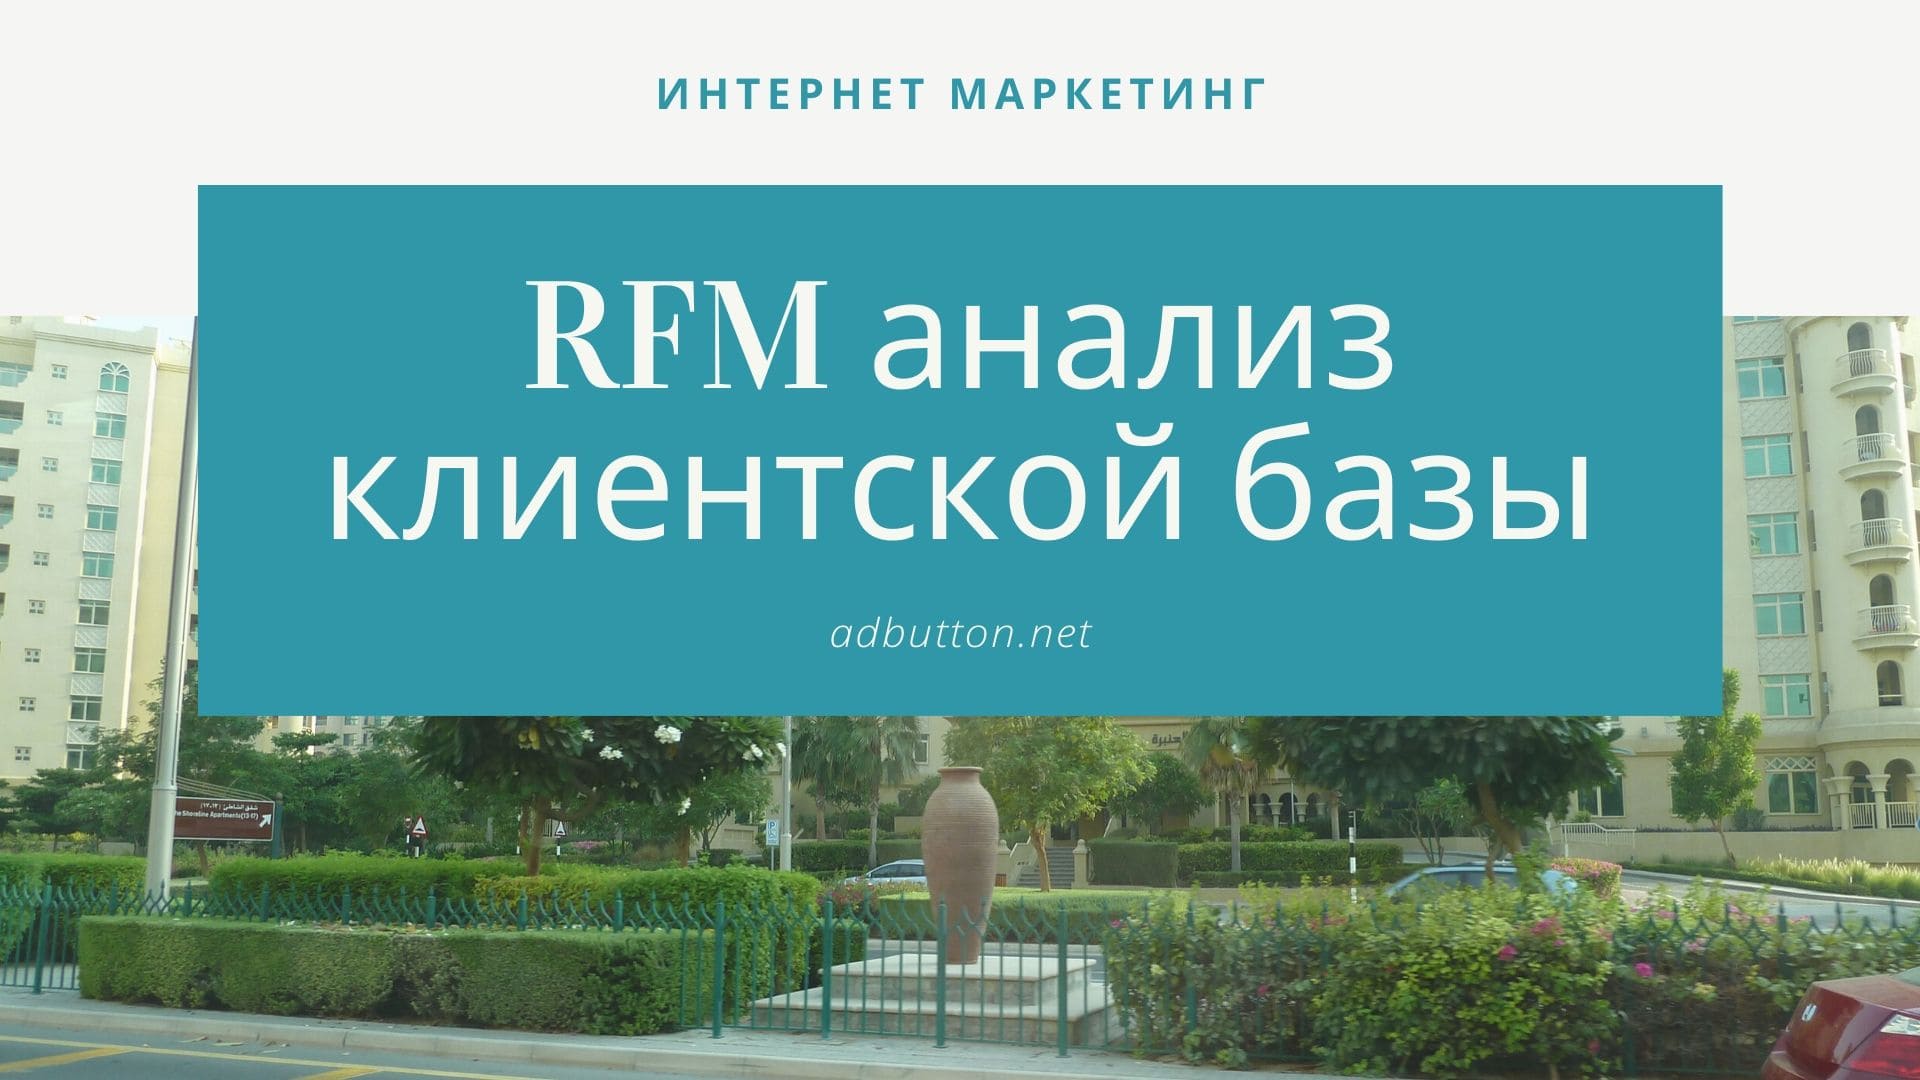 RFM анализ клиентской базы и сегментация в emal маркетинге